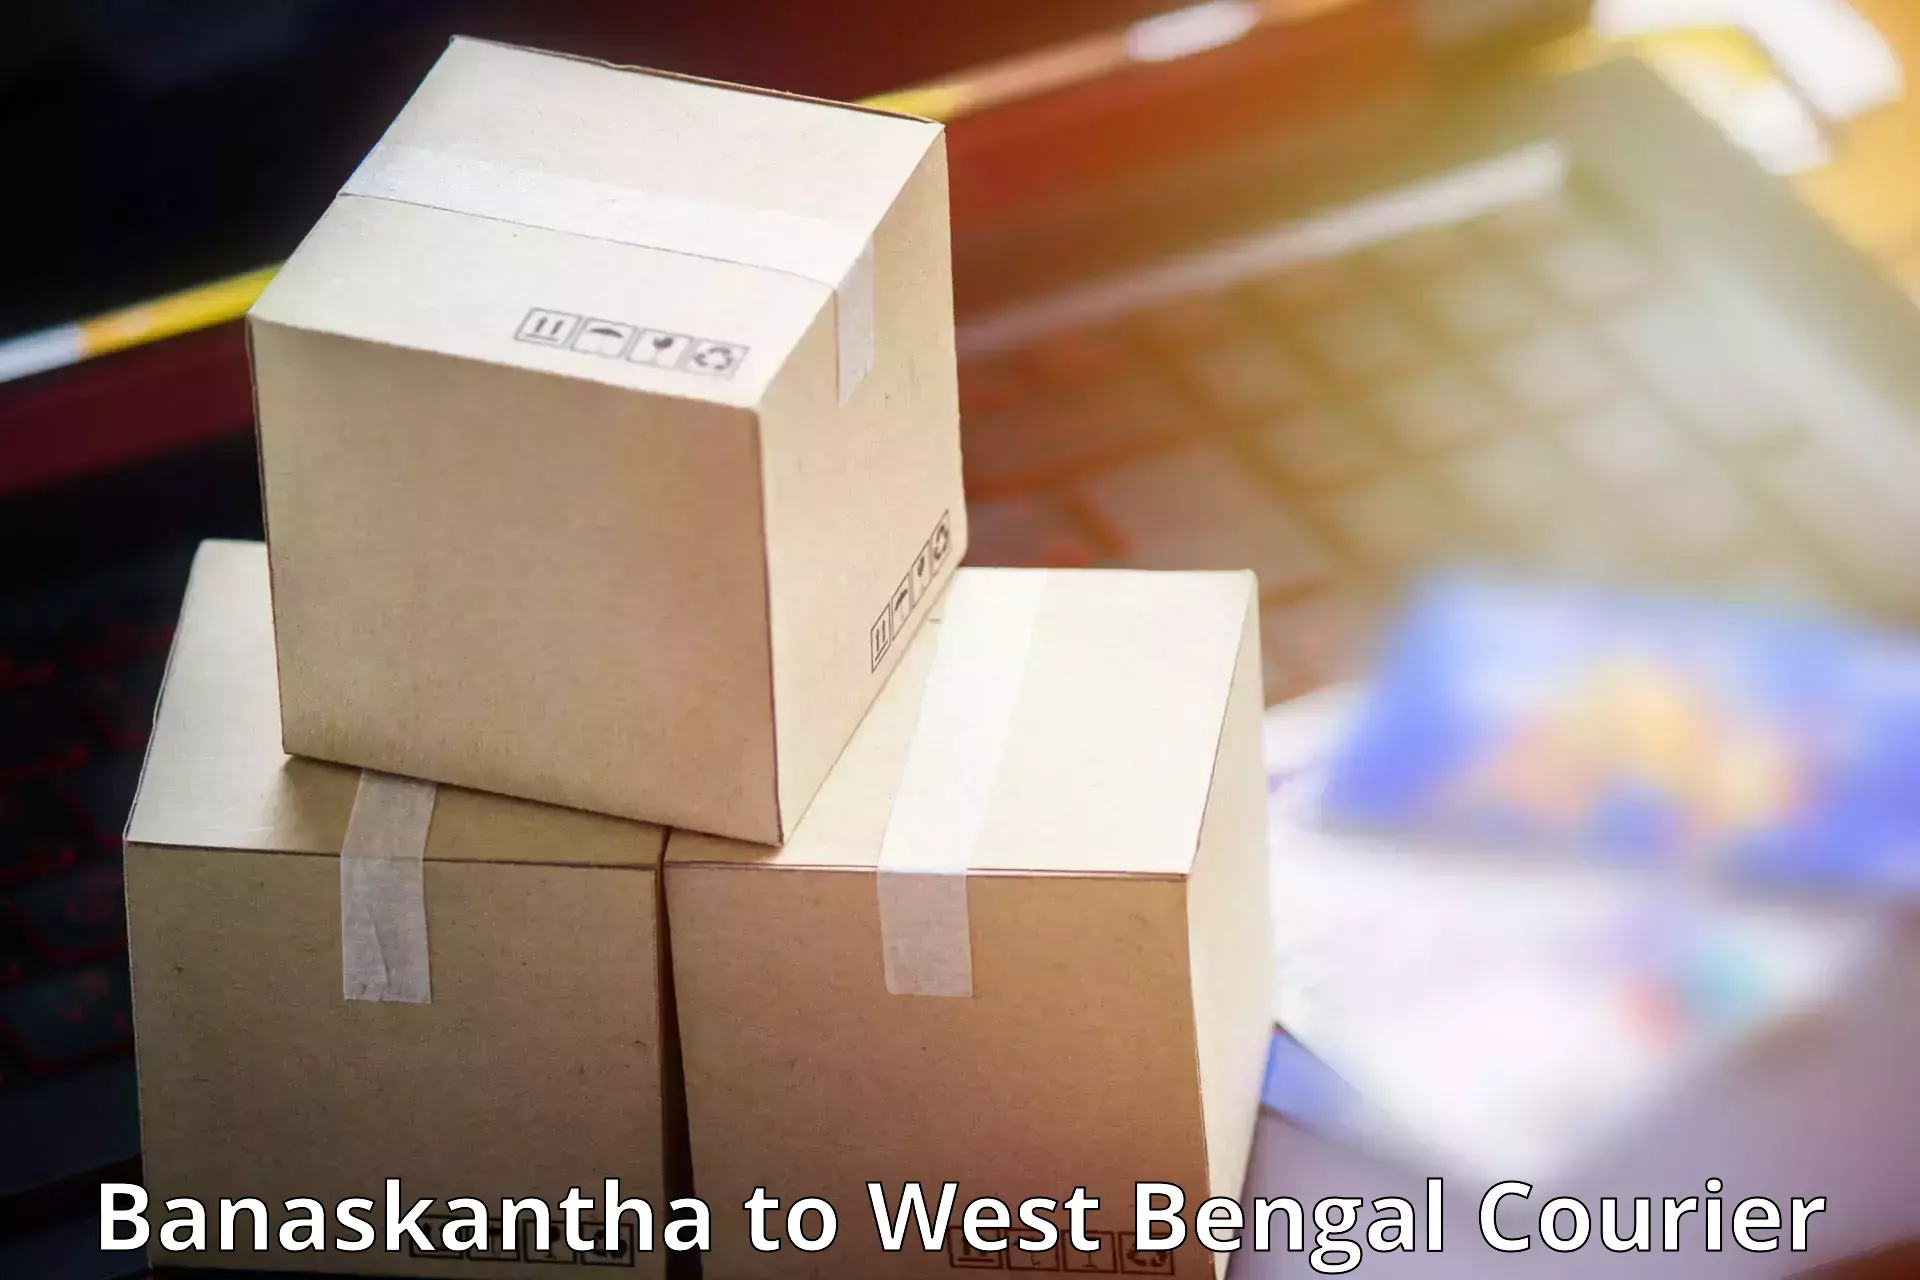 Holiday shipping services Banaskantha to South 24 Parganas